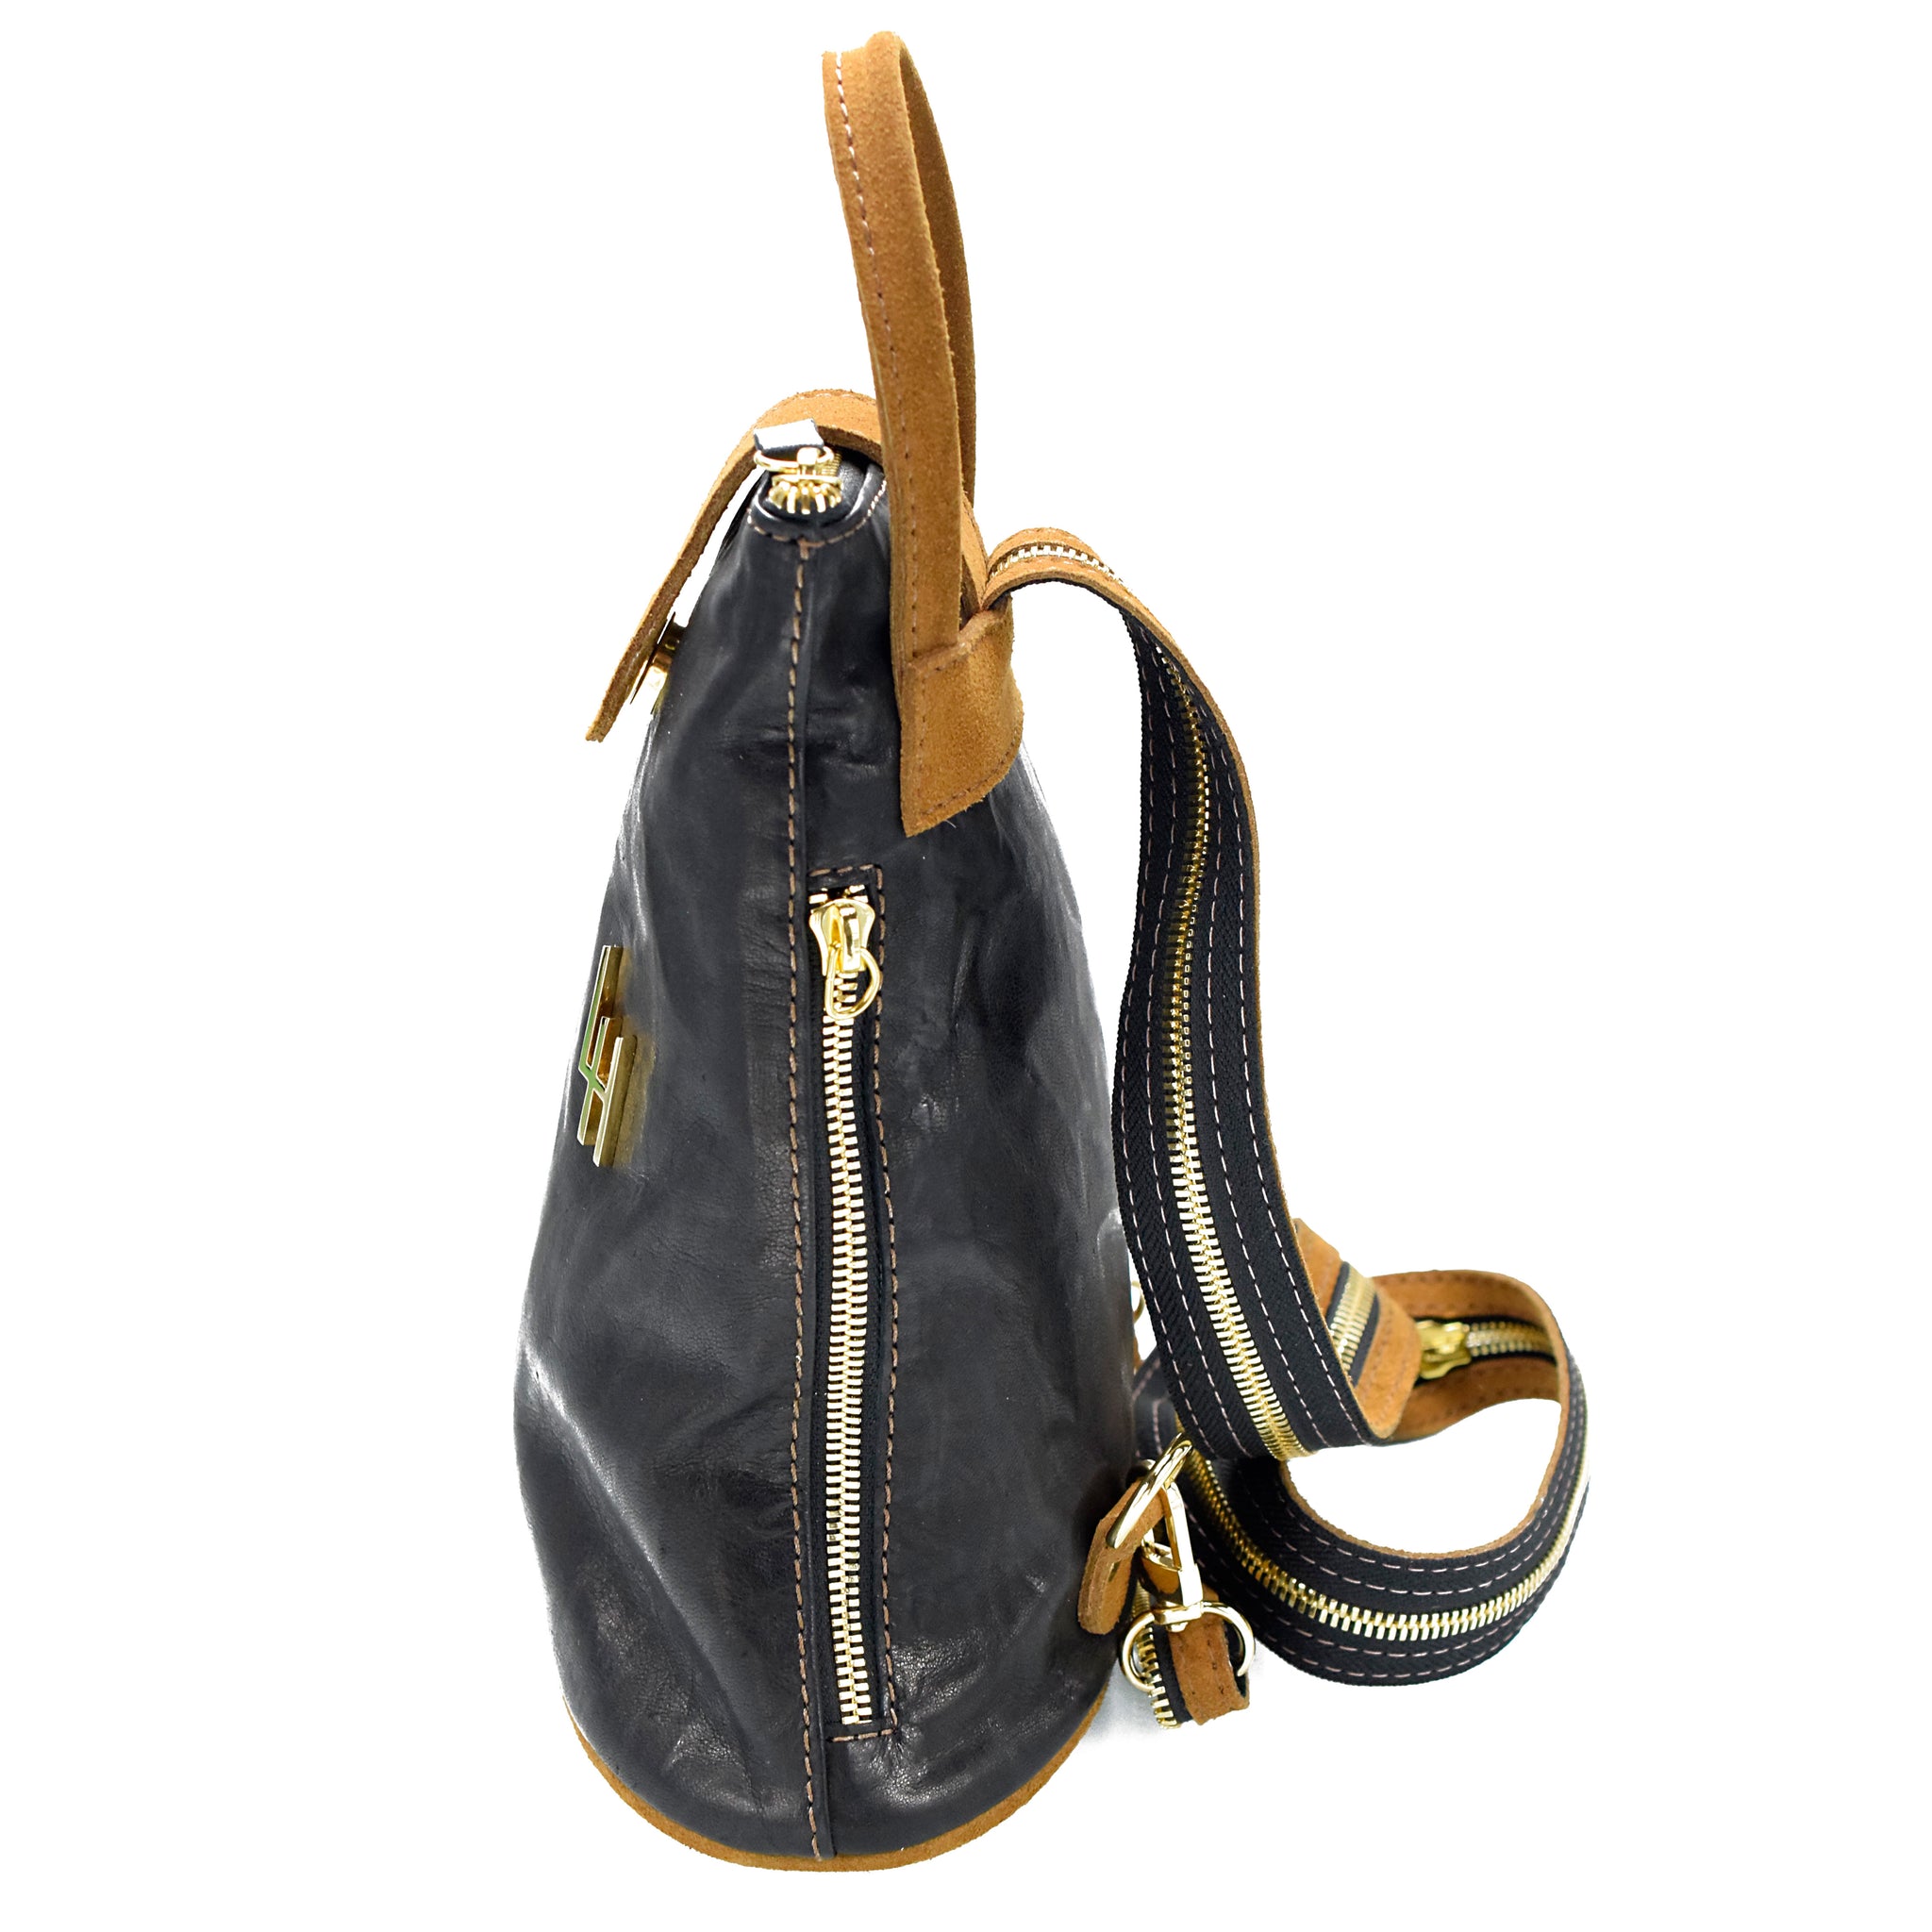 Jennifer Garner Loves This Tumi Backpack for Travel